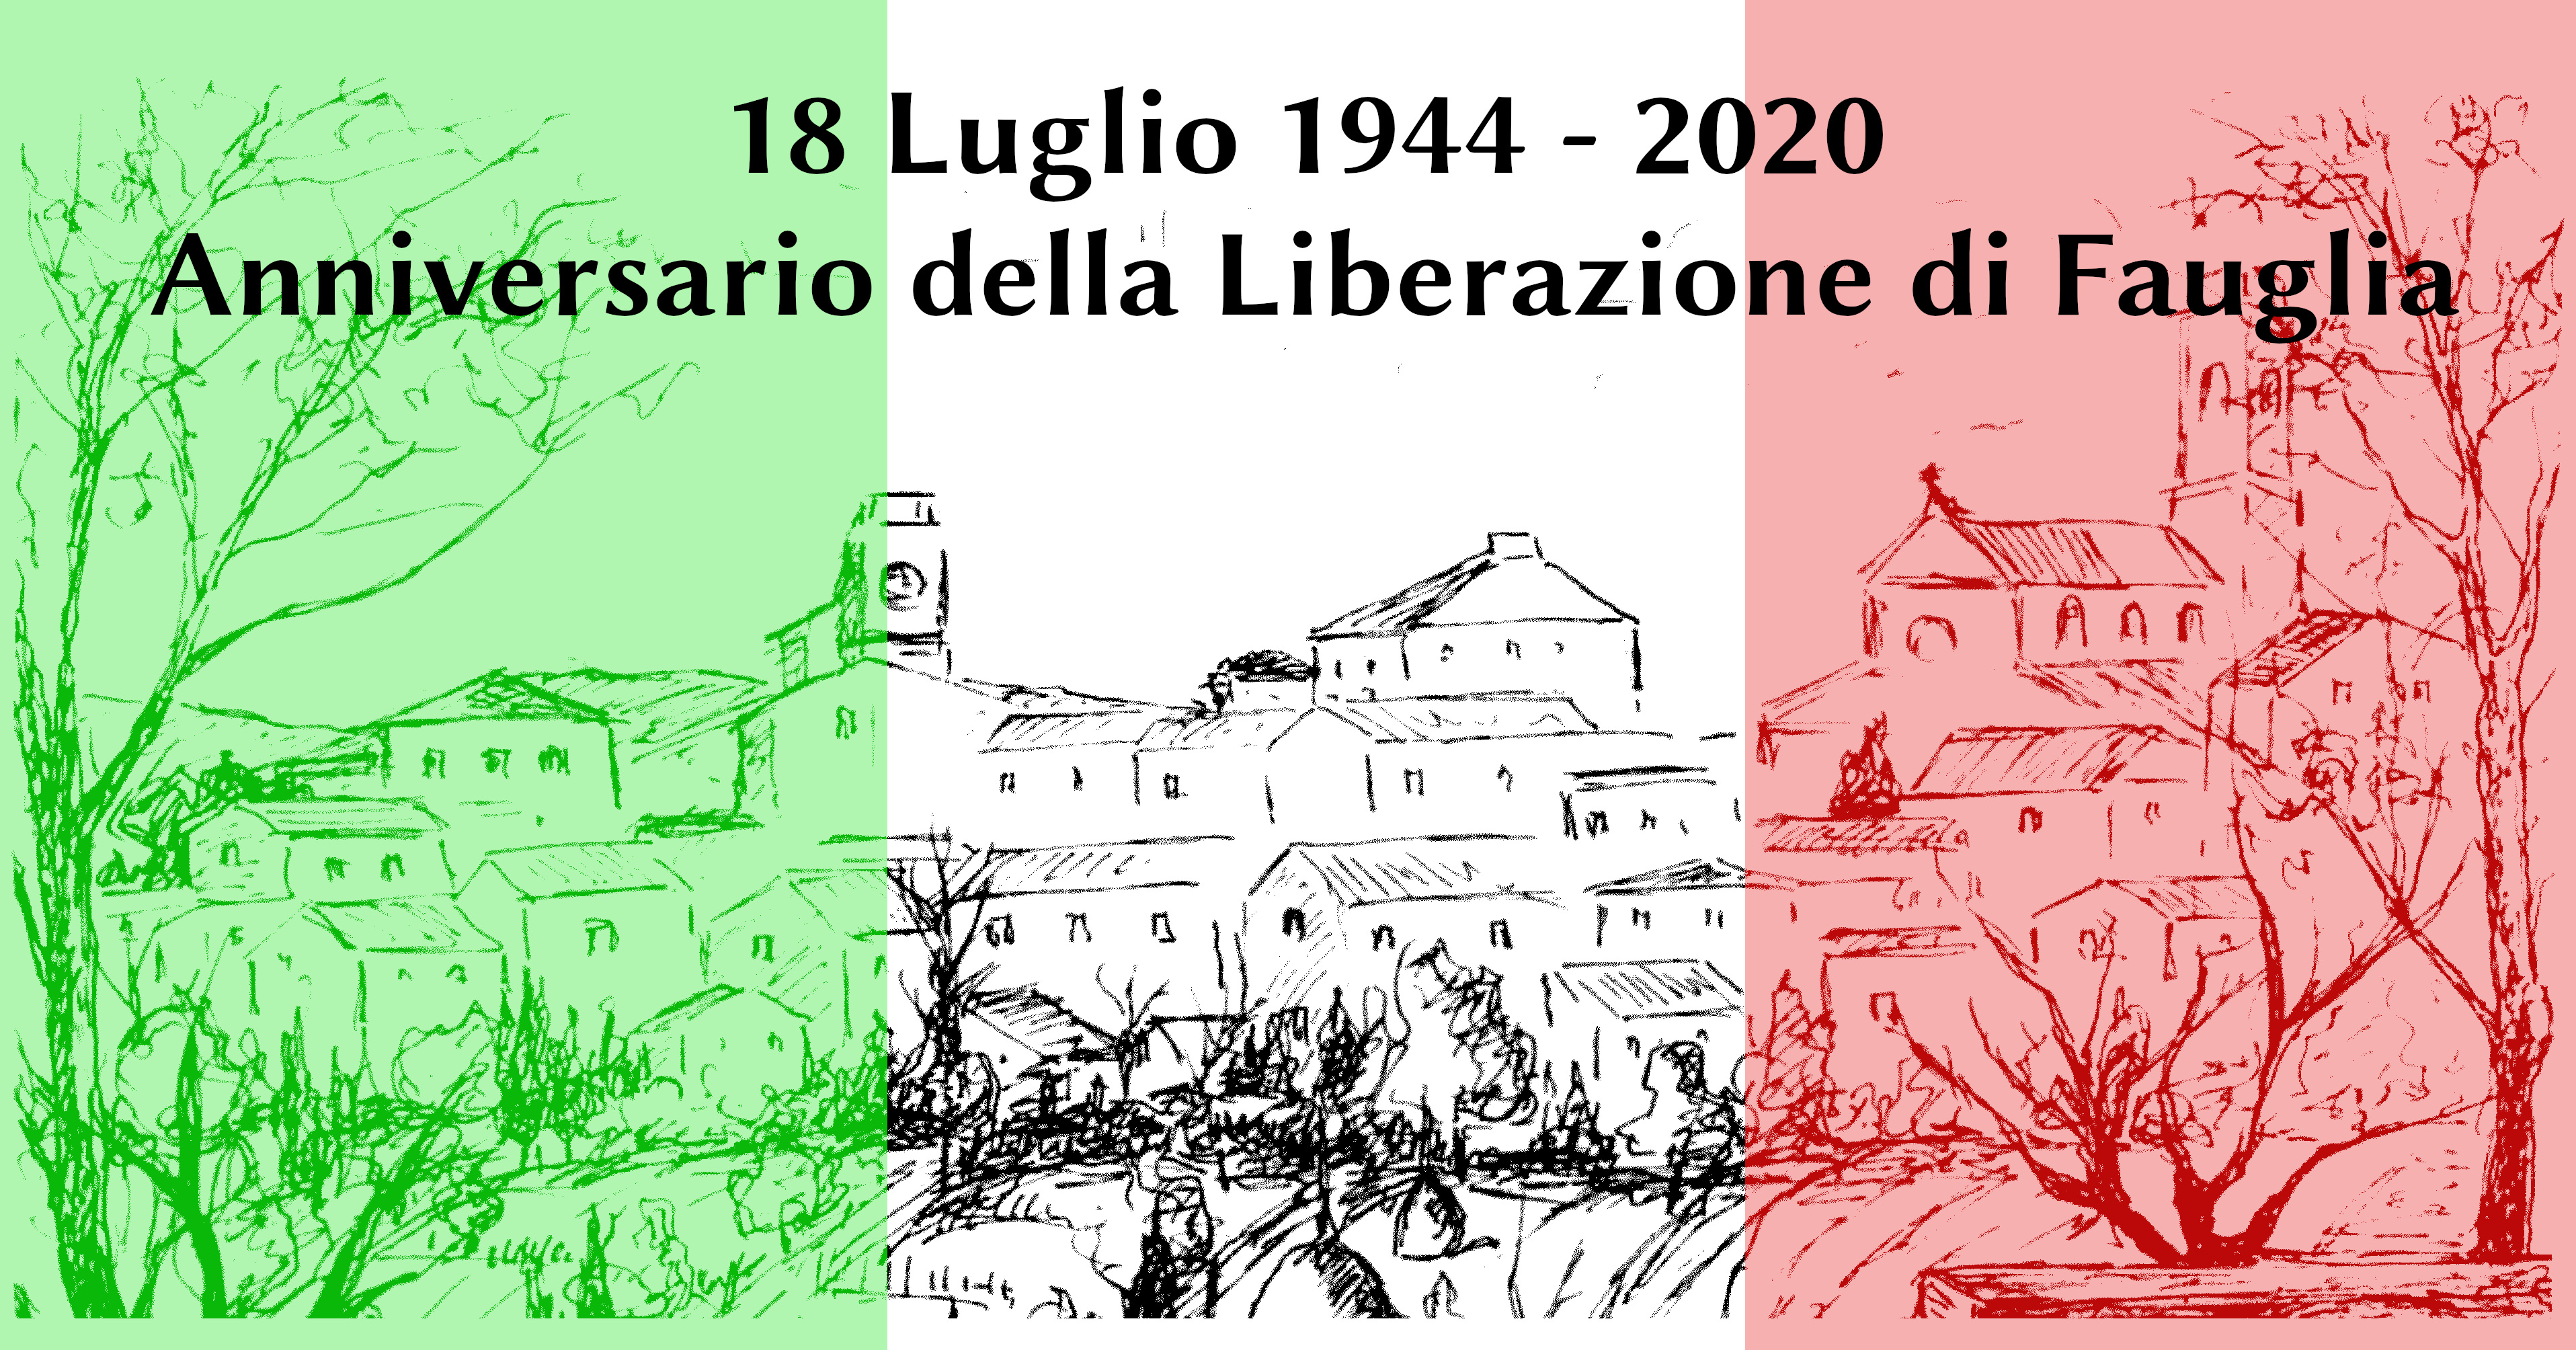 18 LUGLIO 1944 - 18 LUGLIO 2020. ANNIVERSARIO DELLA LIBERAZIONE DI FAUGLIA